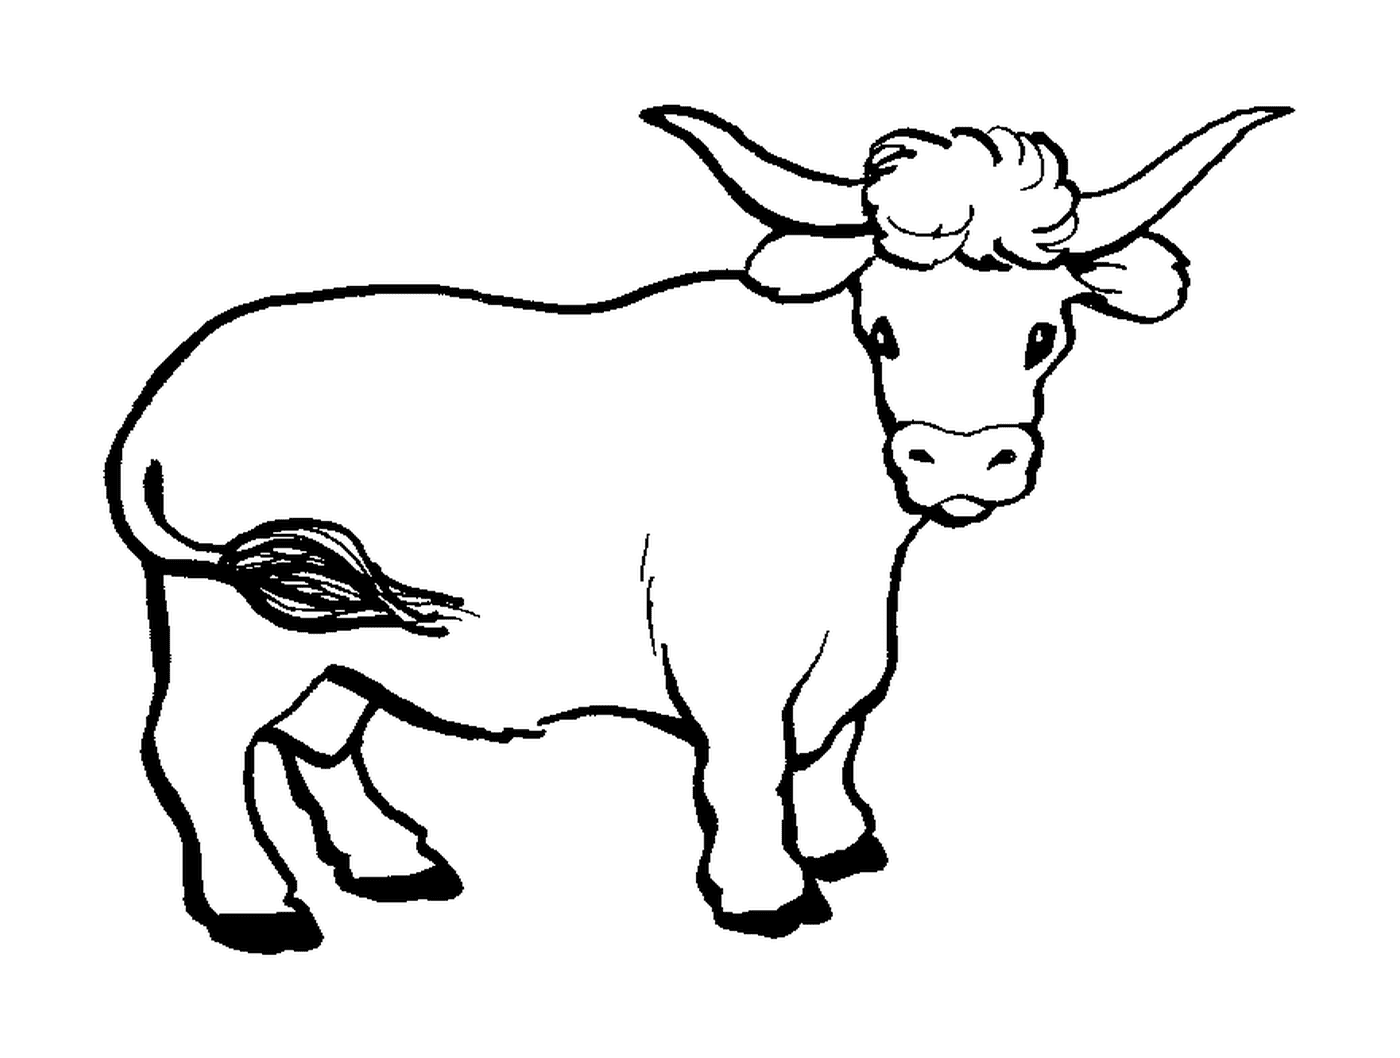  गाय 